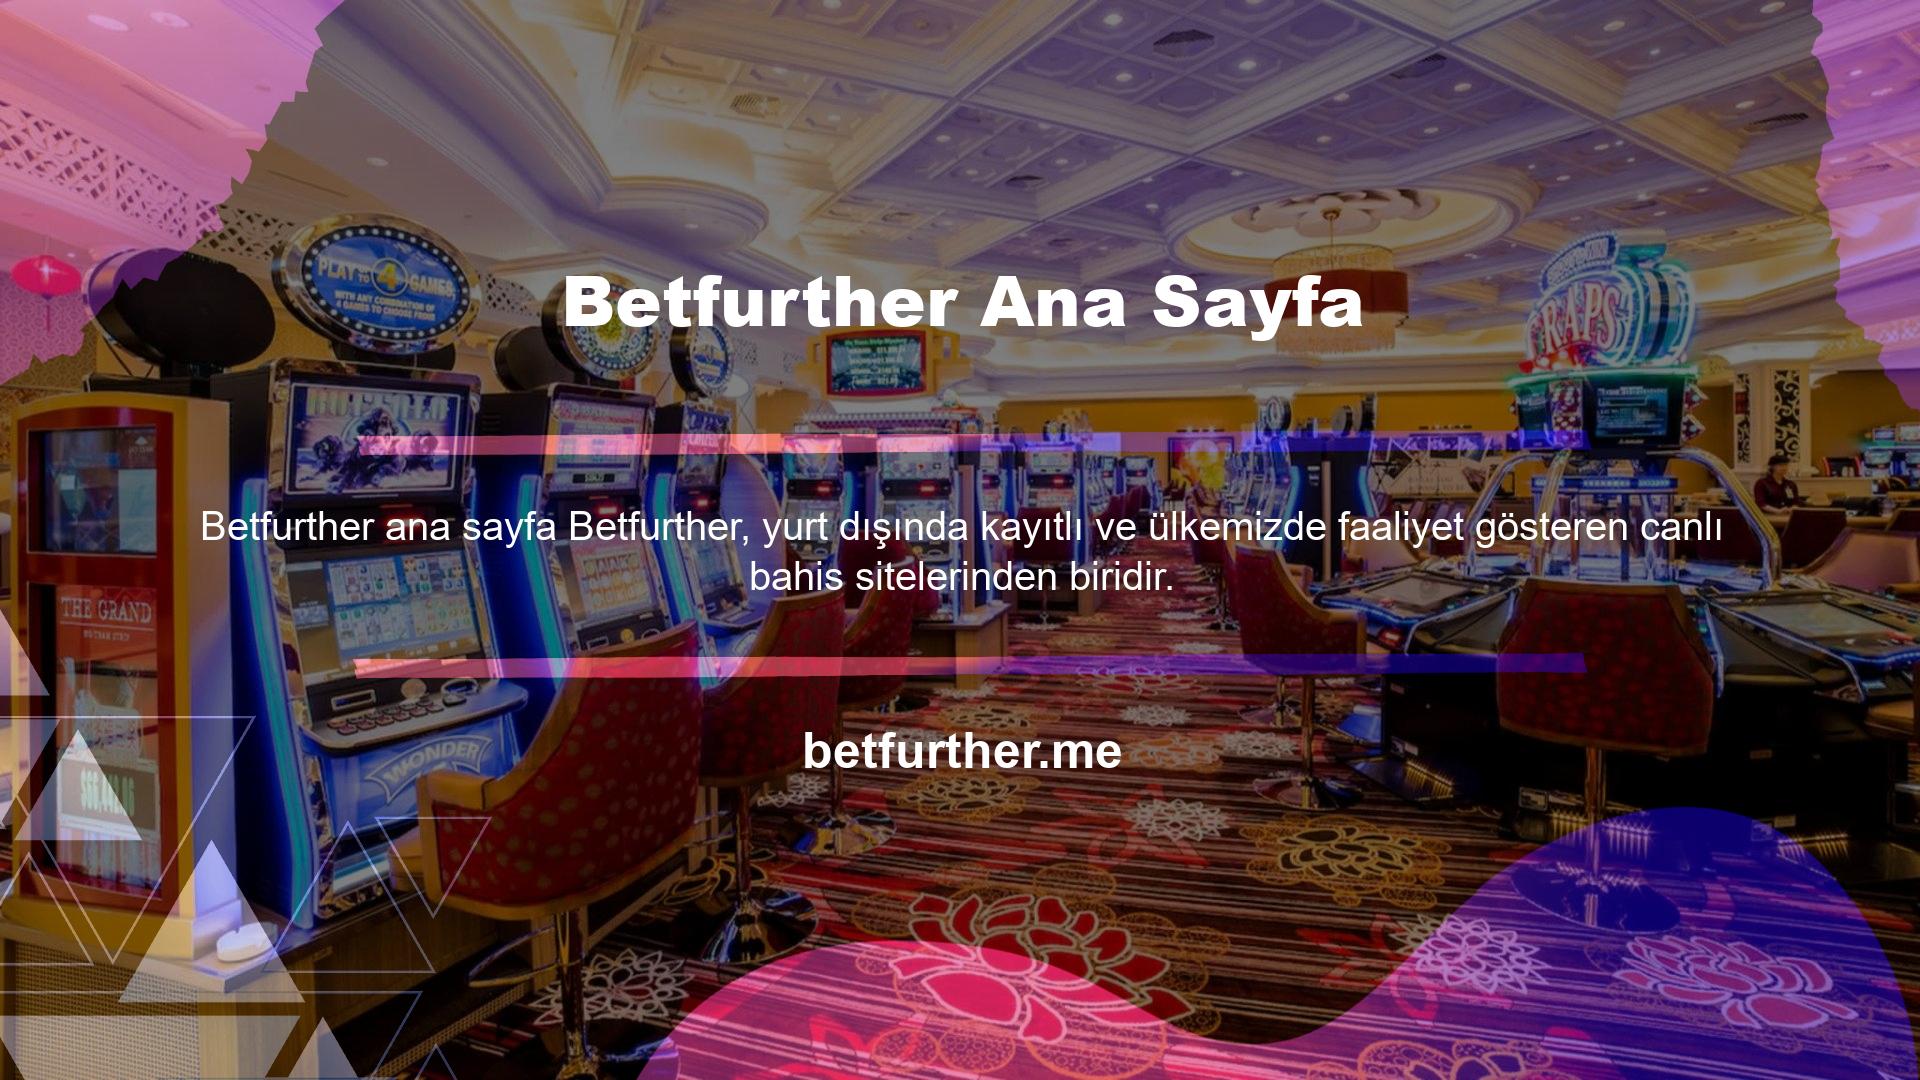 Betfurther oldukça iyi bir hizmet sunmakta ve bu konuda birçok kullanıcı tarafından tercih edilmektedir